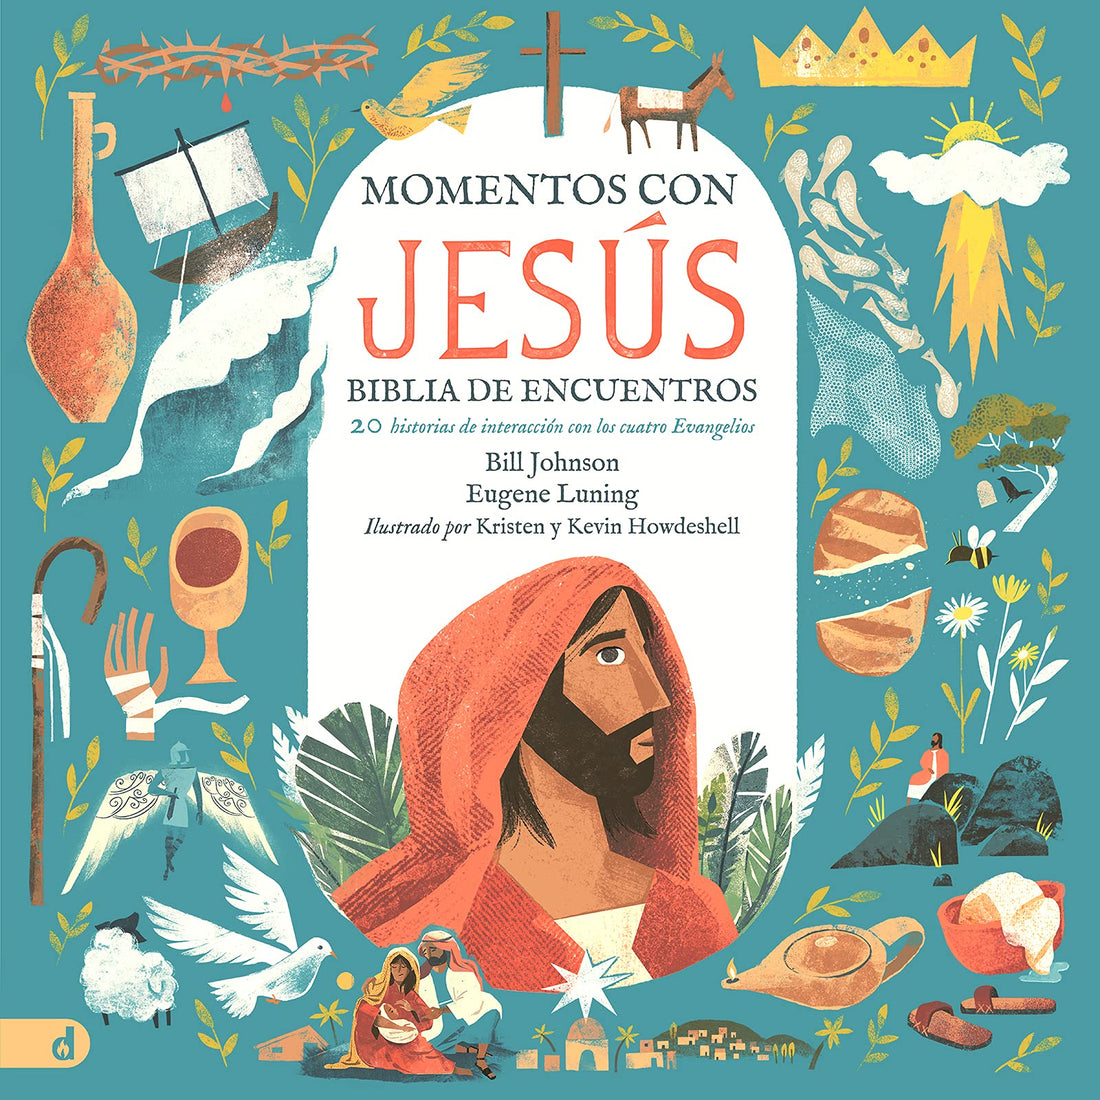 Momentos con Jesús – Biblia de Encuentros (Spanish Edition): 20 Historias de Interacción con los Cuatro Evangelios Hardcover – October 19, 2021